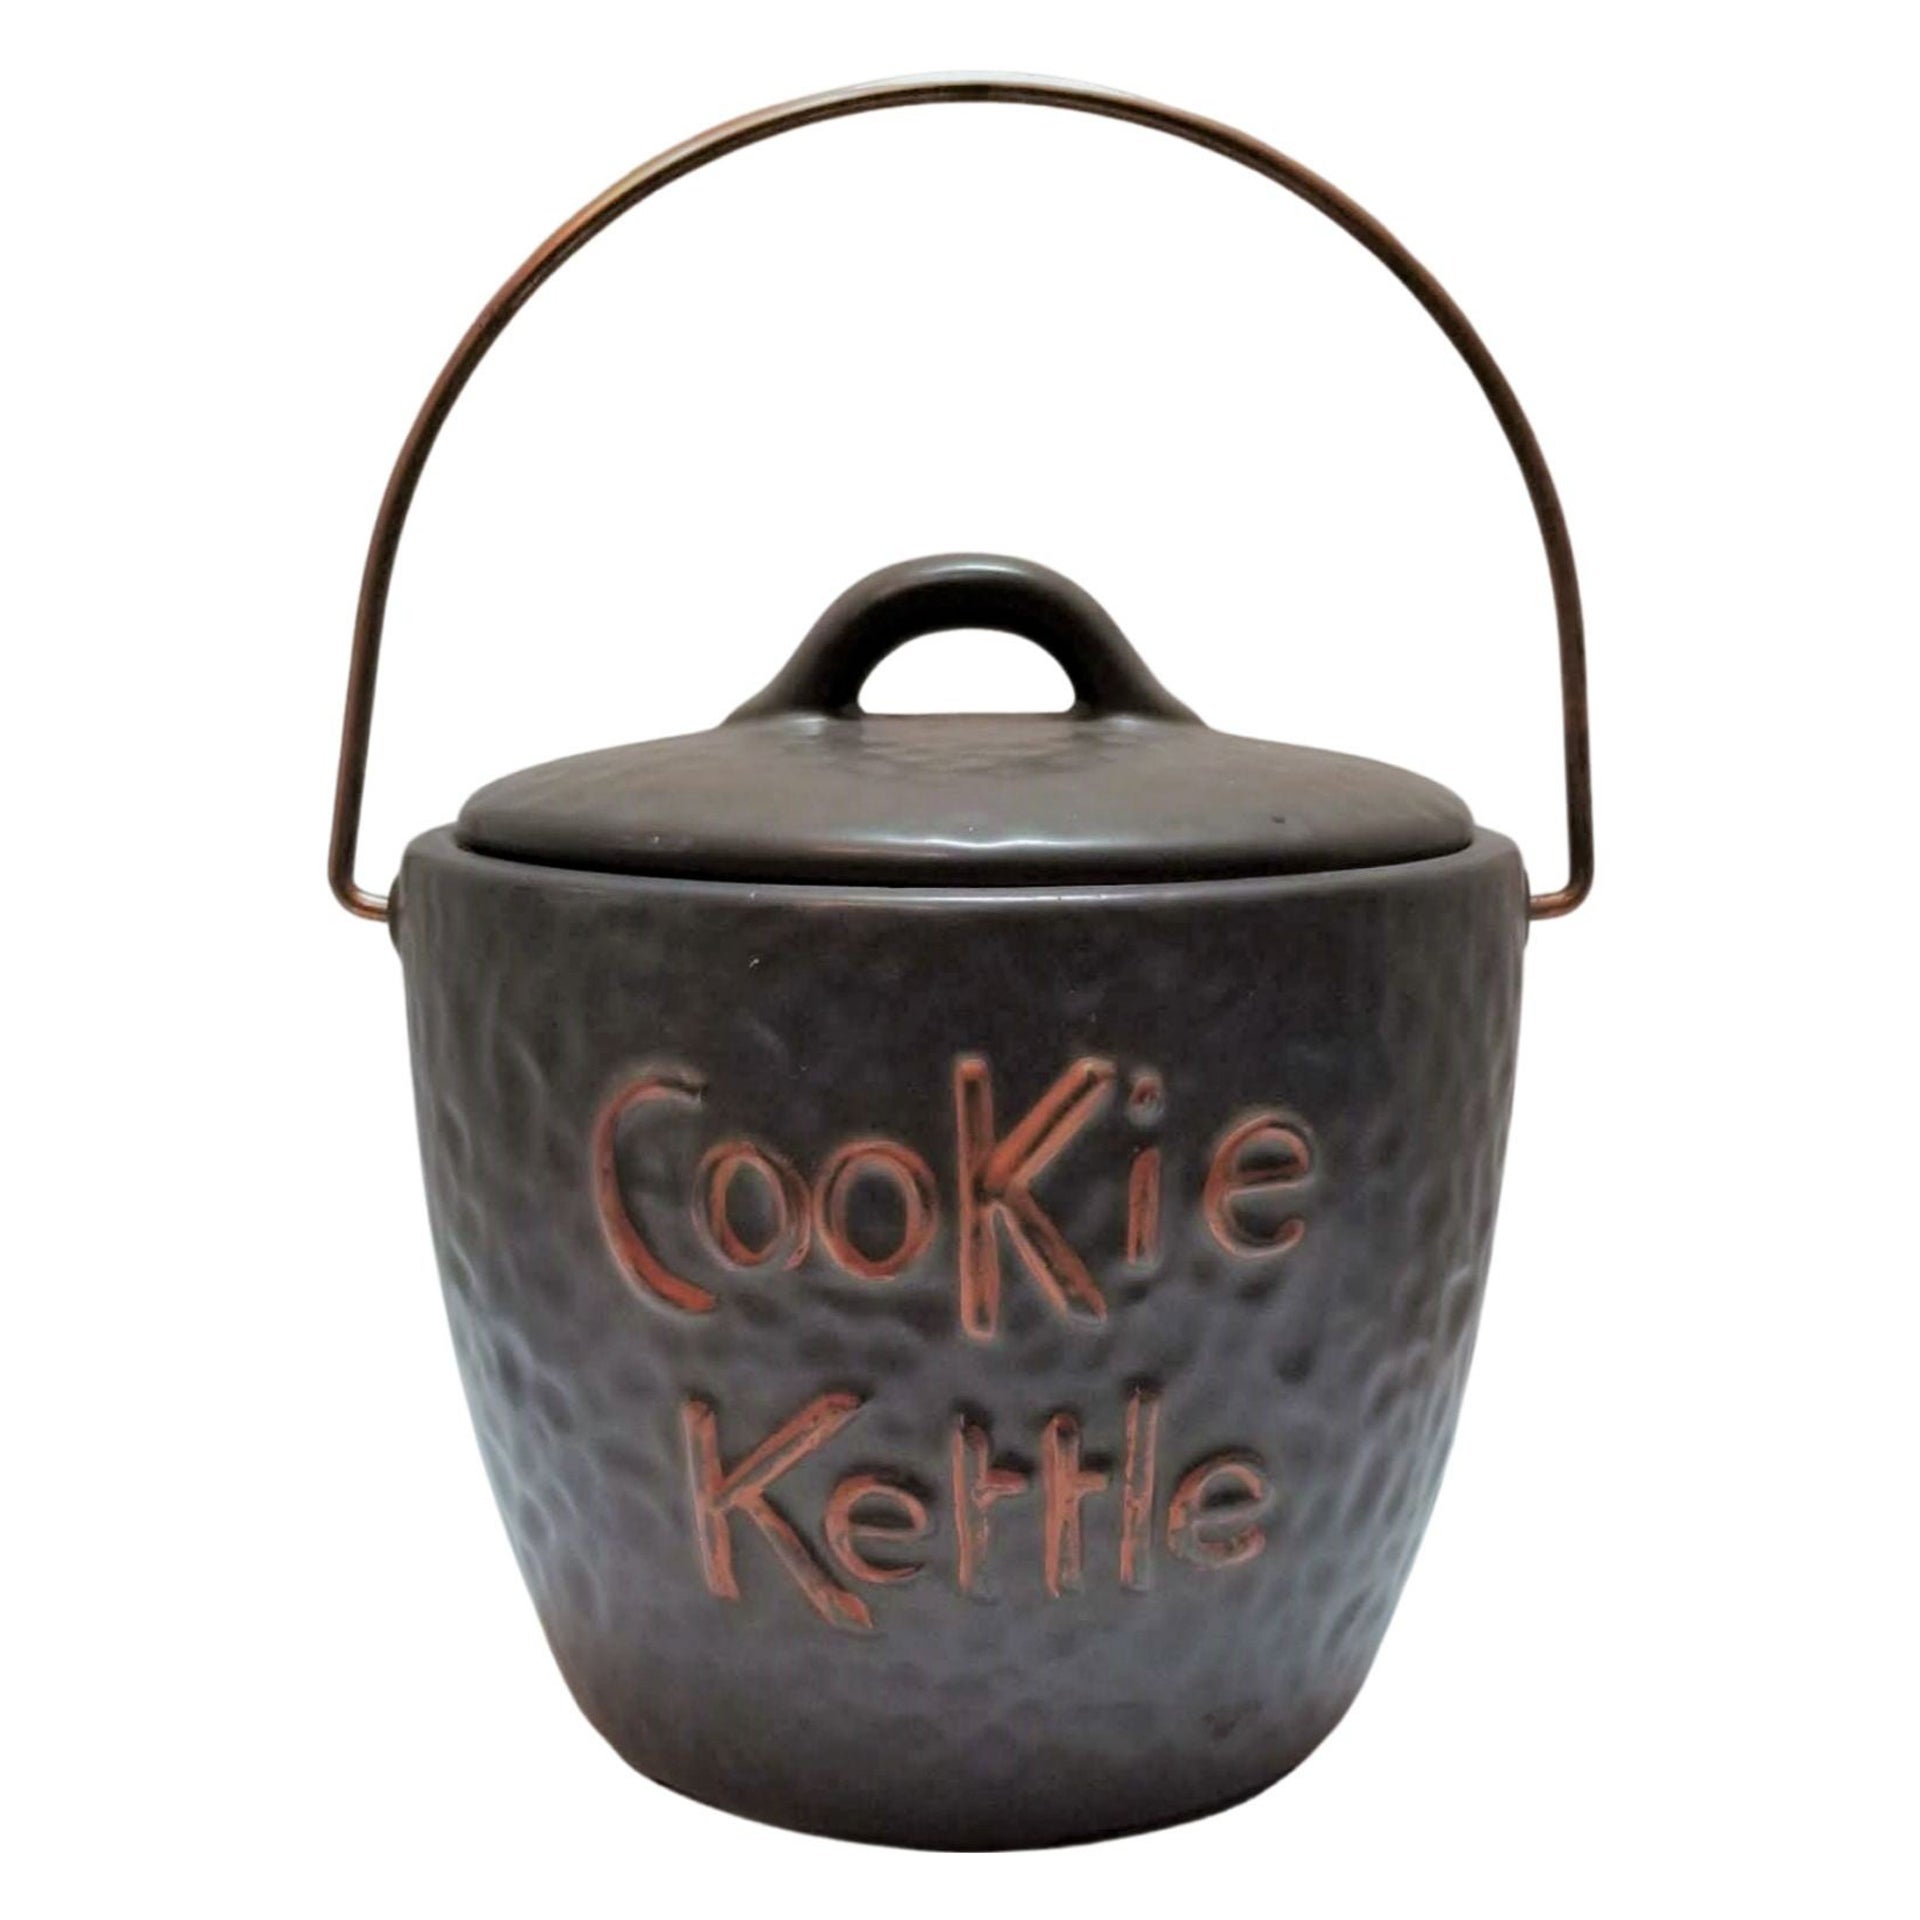 Jarre à biscuits "Cookie Kettle" du milieu du siècle avec anse supérieure